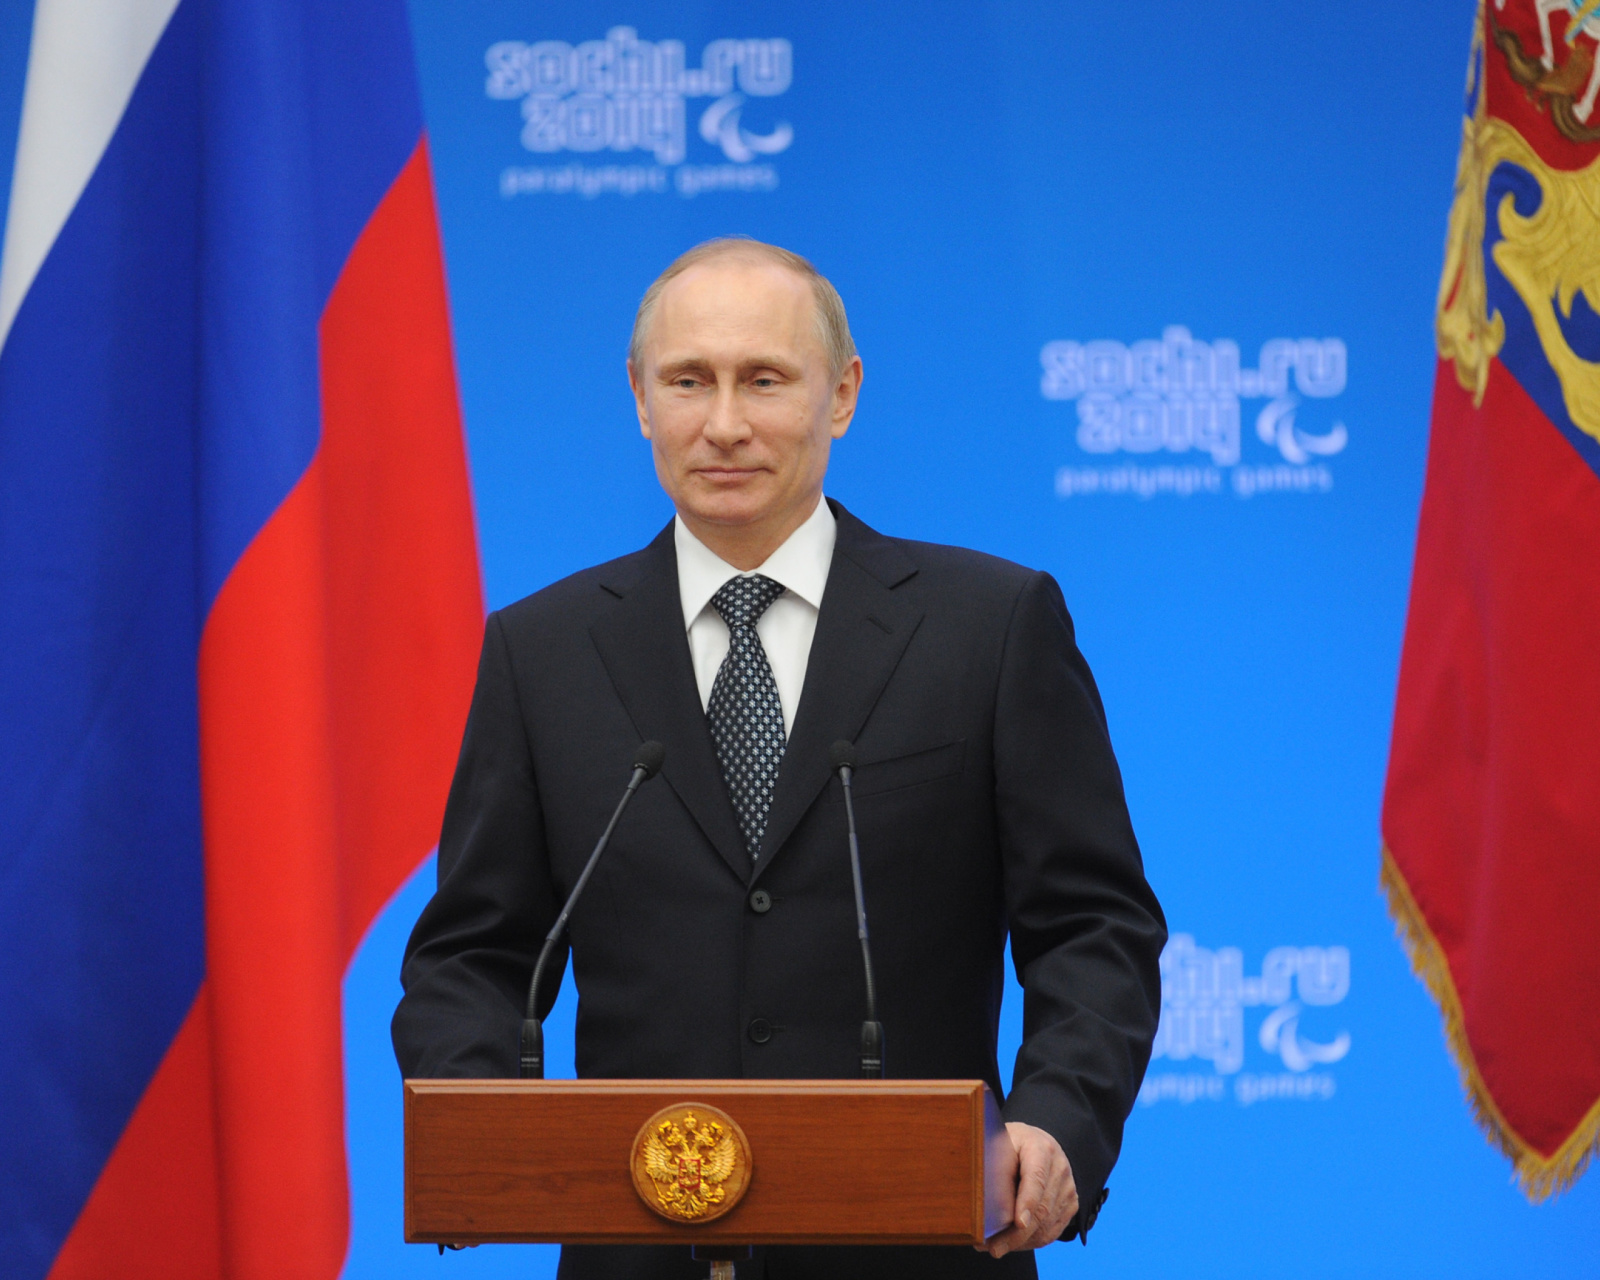 Sfondi Vladimir Putin Russian President 1600x1280